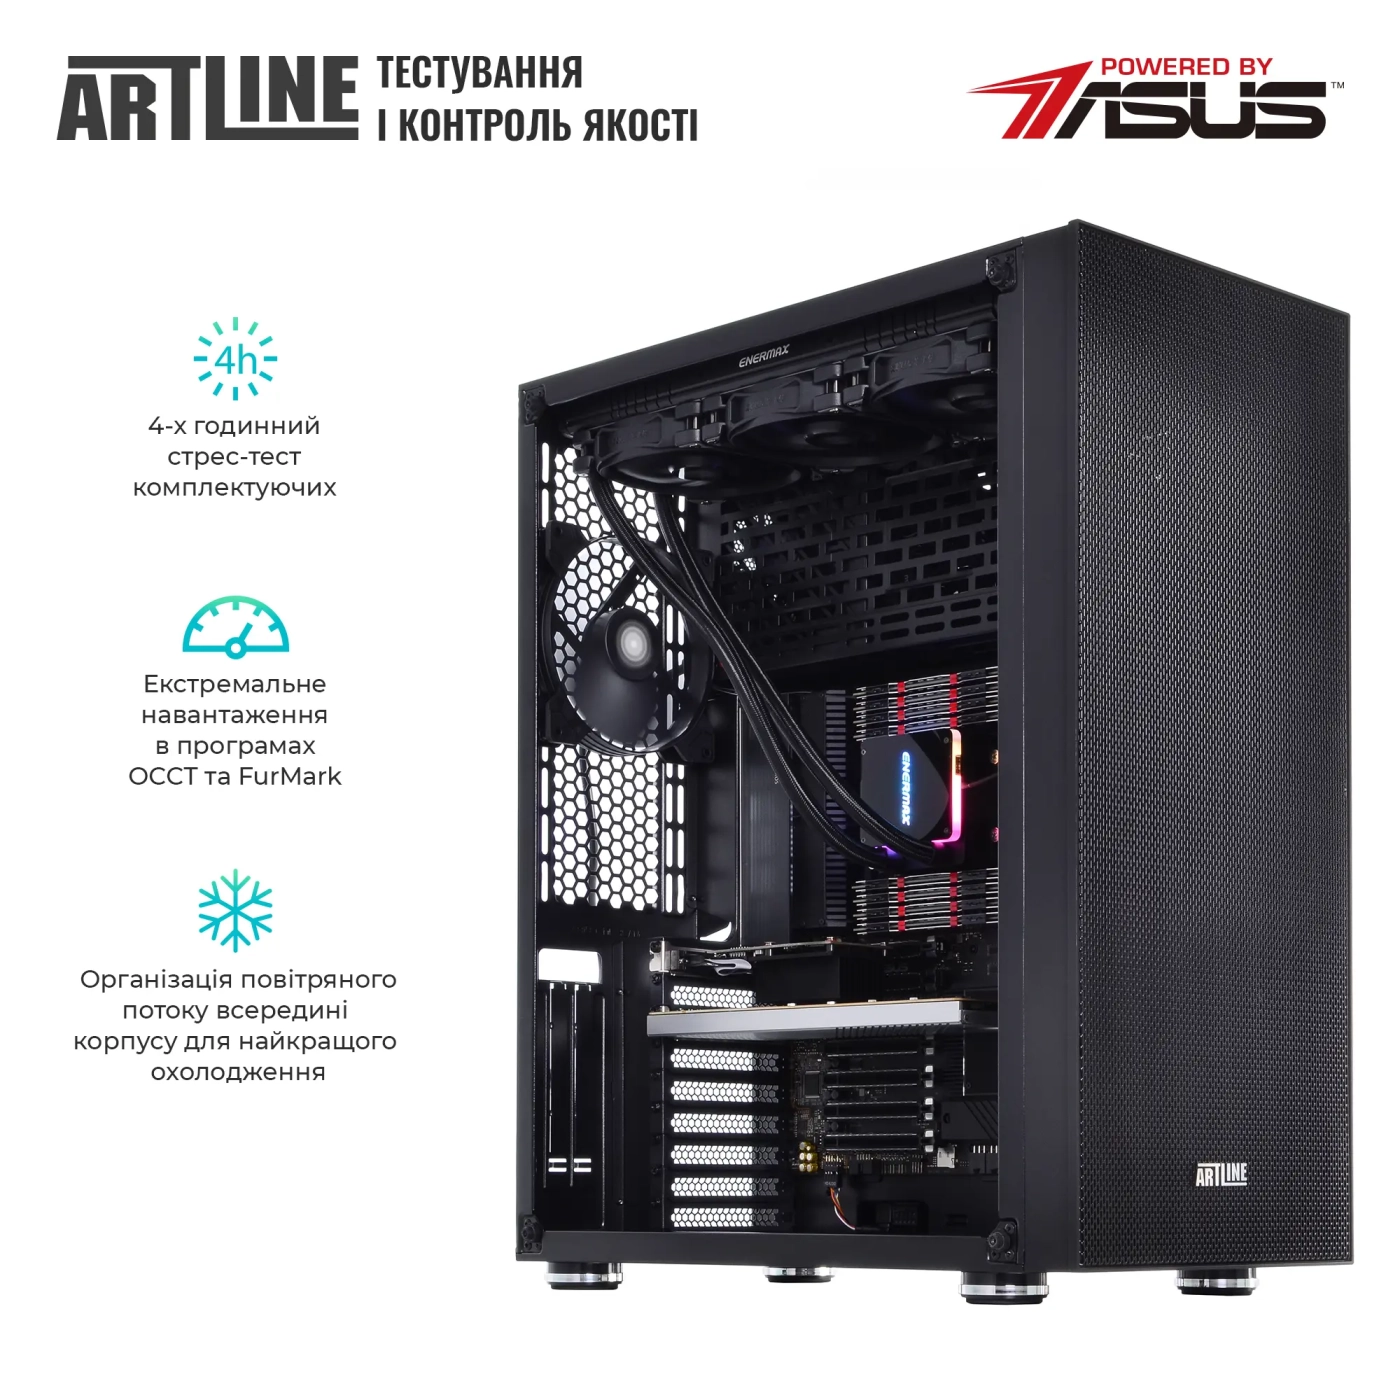 Купить Сервер ARTLINE Business T85v08 - фото 7